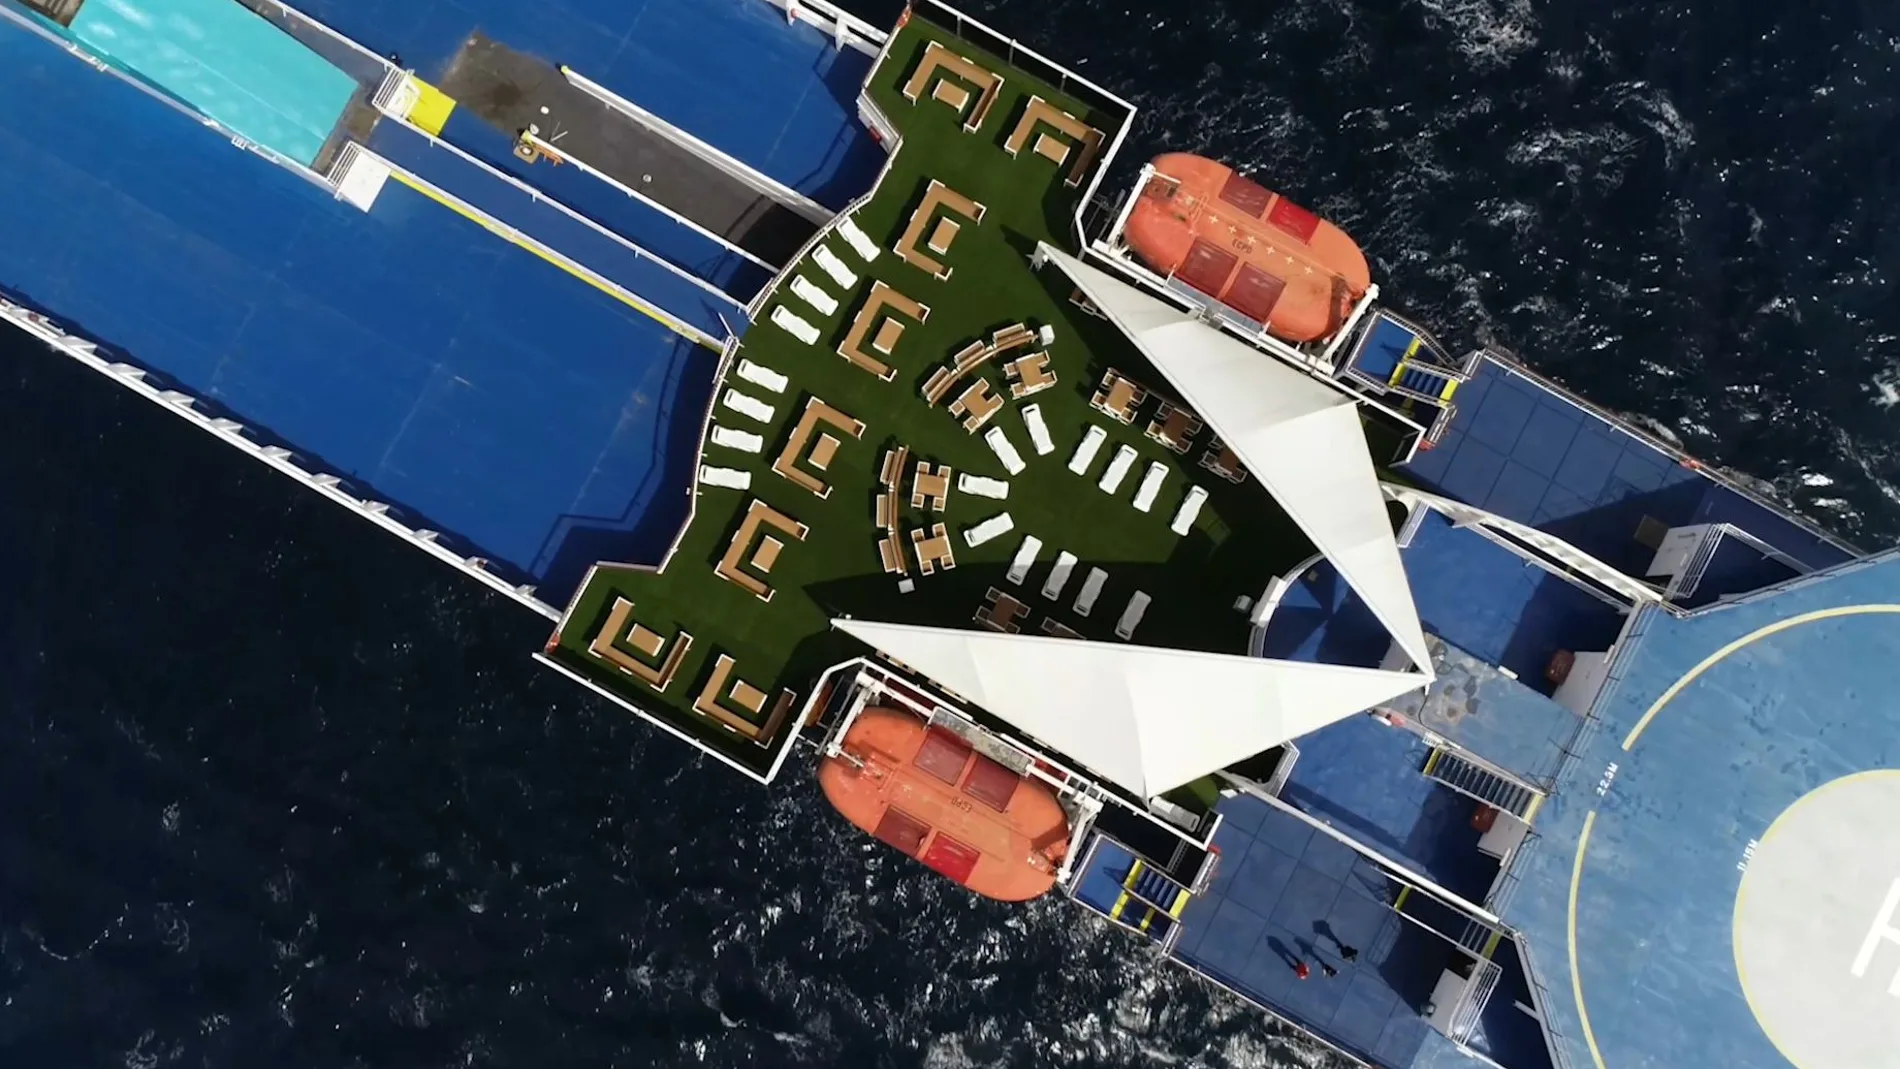 Dos de los buques de Balearia han amueblado sus cubiertas con mobiliario sostenible realizado con plástico reciclado de los envases